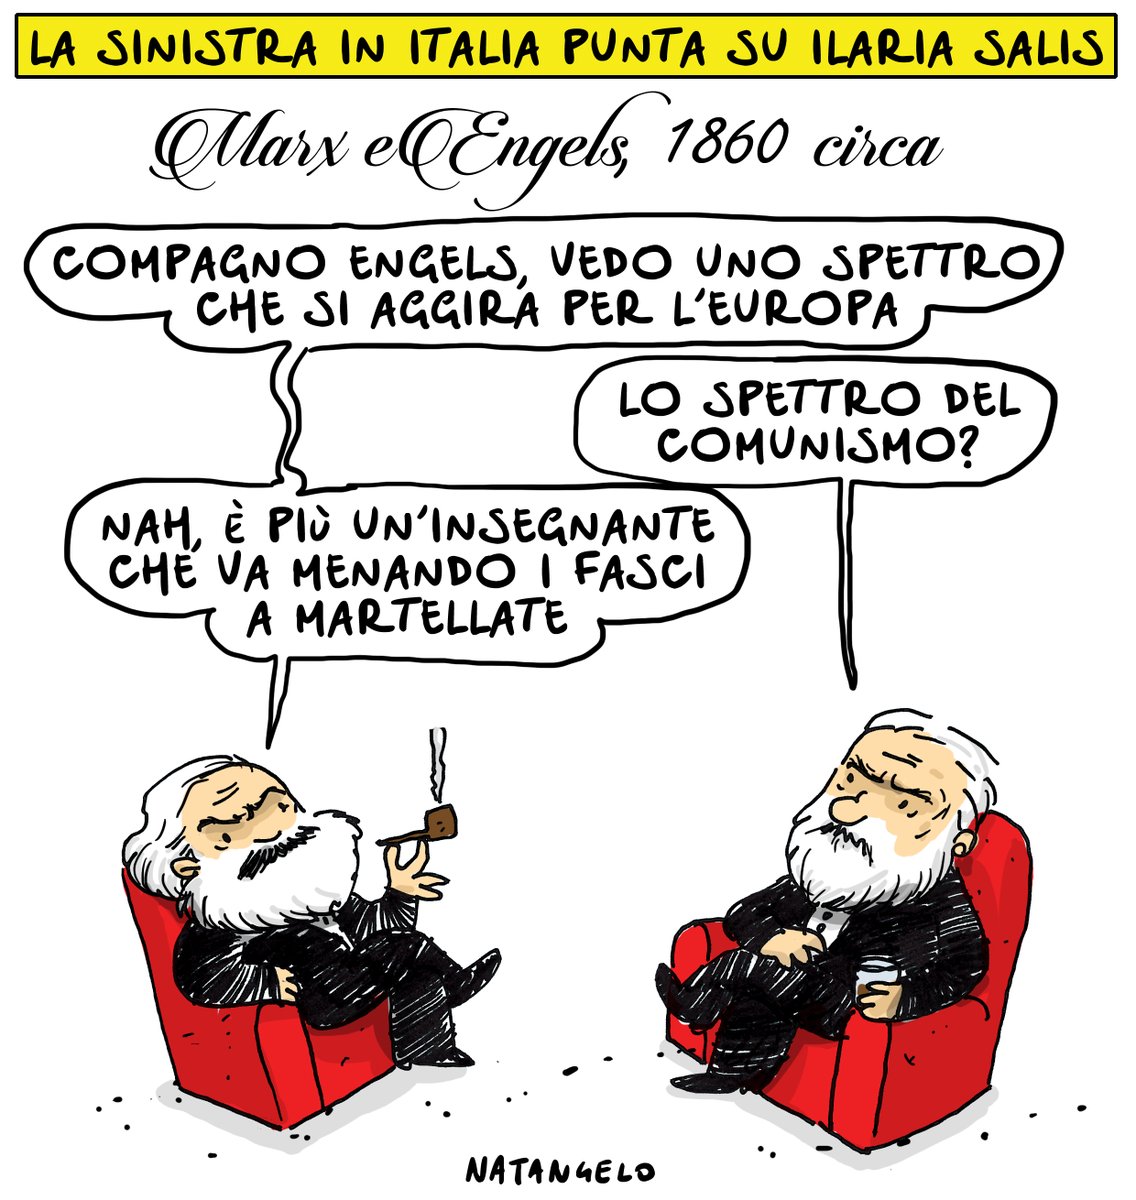 'Ve spacco er plusvalore'

#salis #ungheria #sinistra #vignetta #fumetto #memeitaliani #umorismo #satira #humor #natangelo